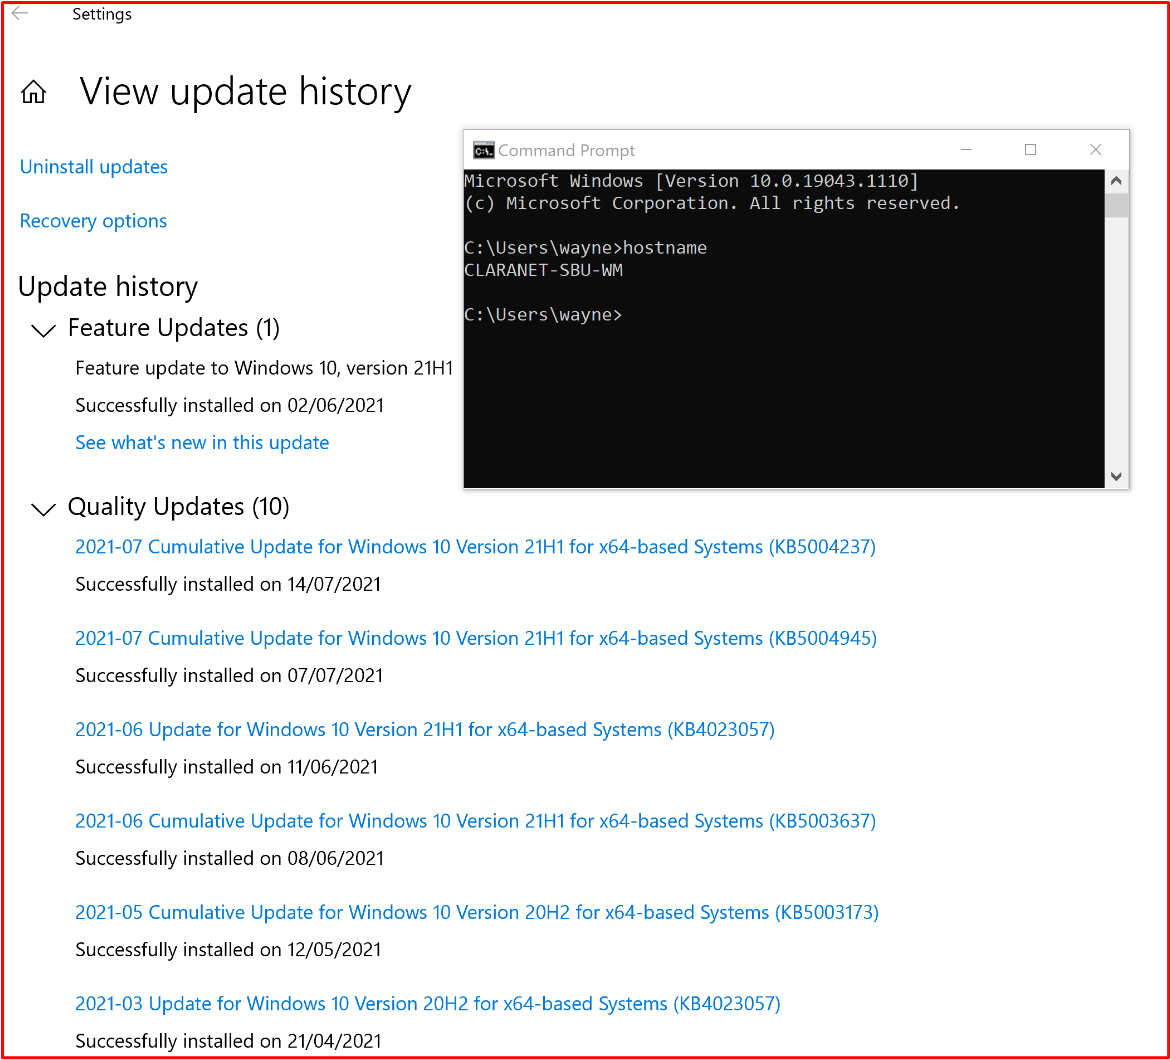 螢幕快照顯示範圍系統元件 「CLARANET-SBU-WM」 中的 正在執行符合修補原則的 Windows 更新。